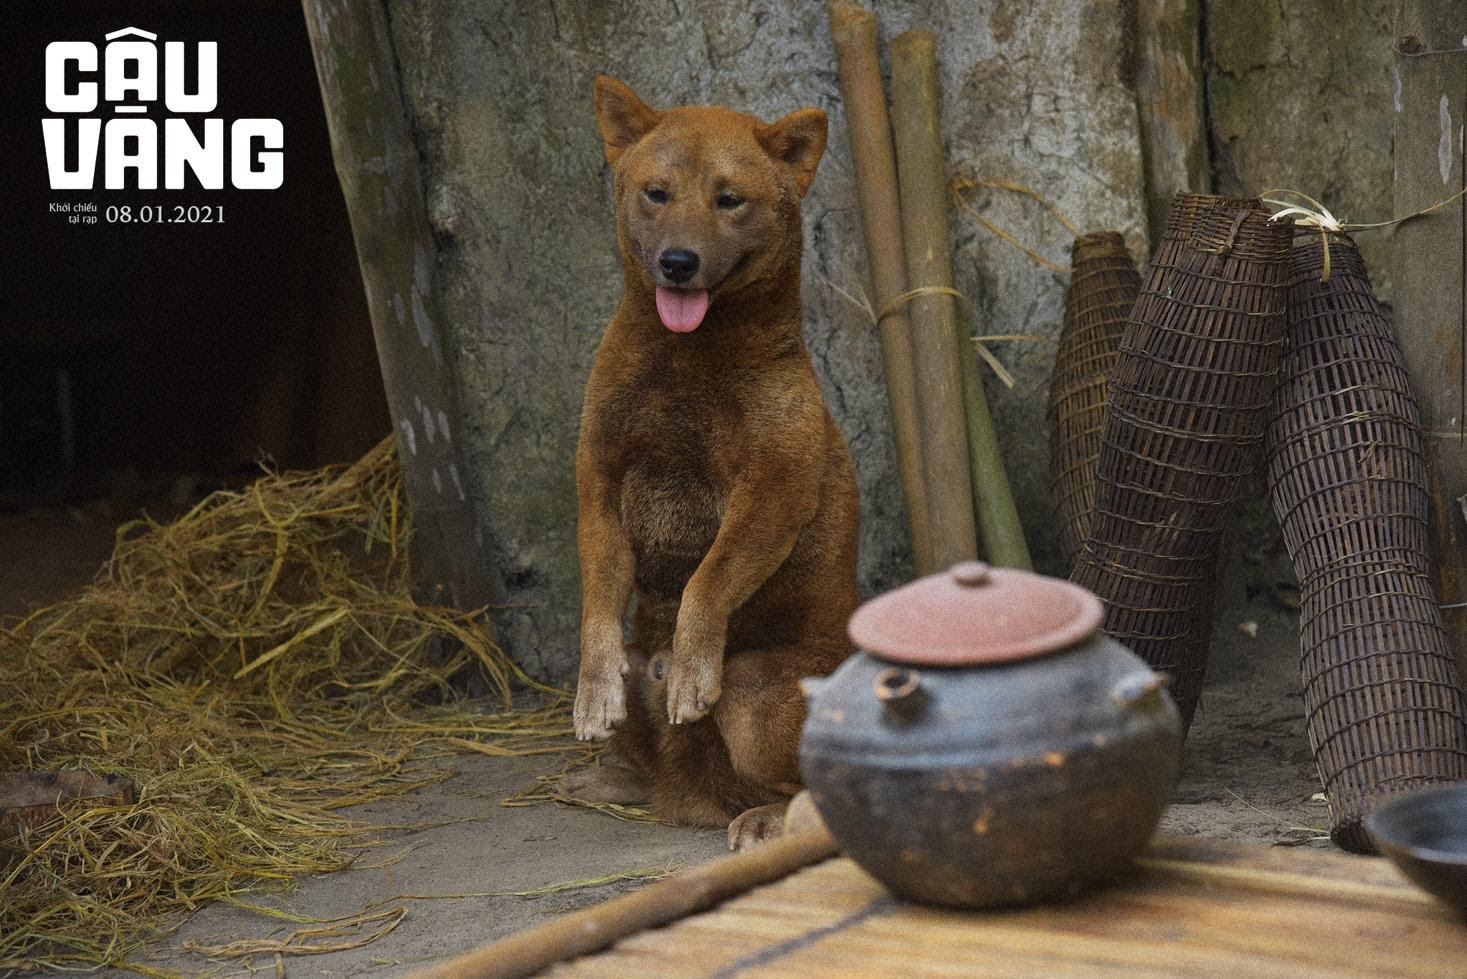 Chú chó đảm nhận vai chính đầu tiên trên phim điện ảnh Việt Nam trong Cậu Vàng  